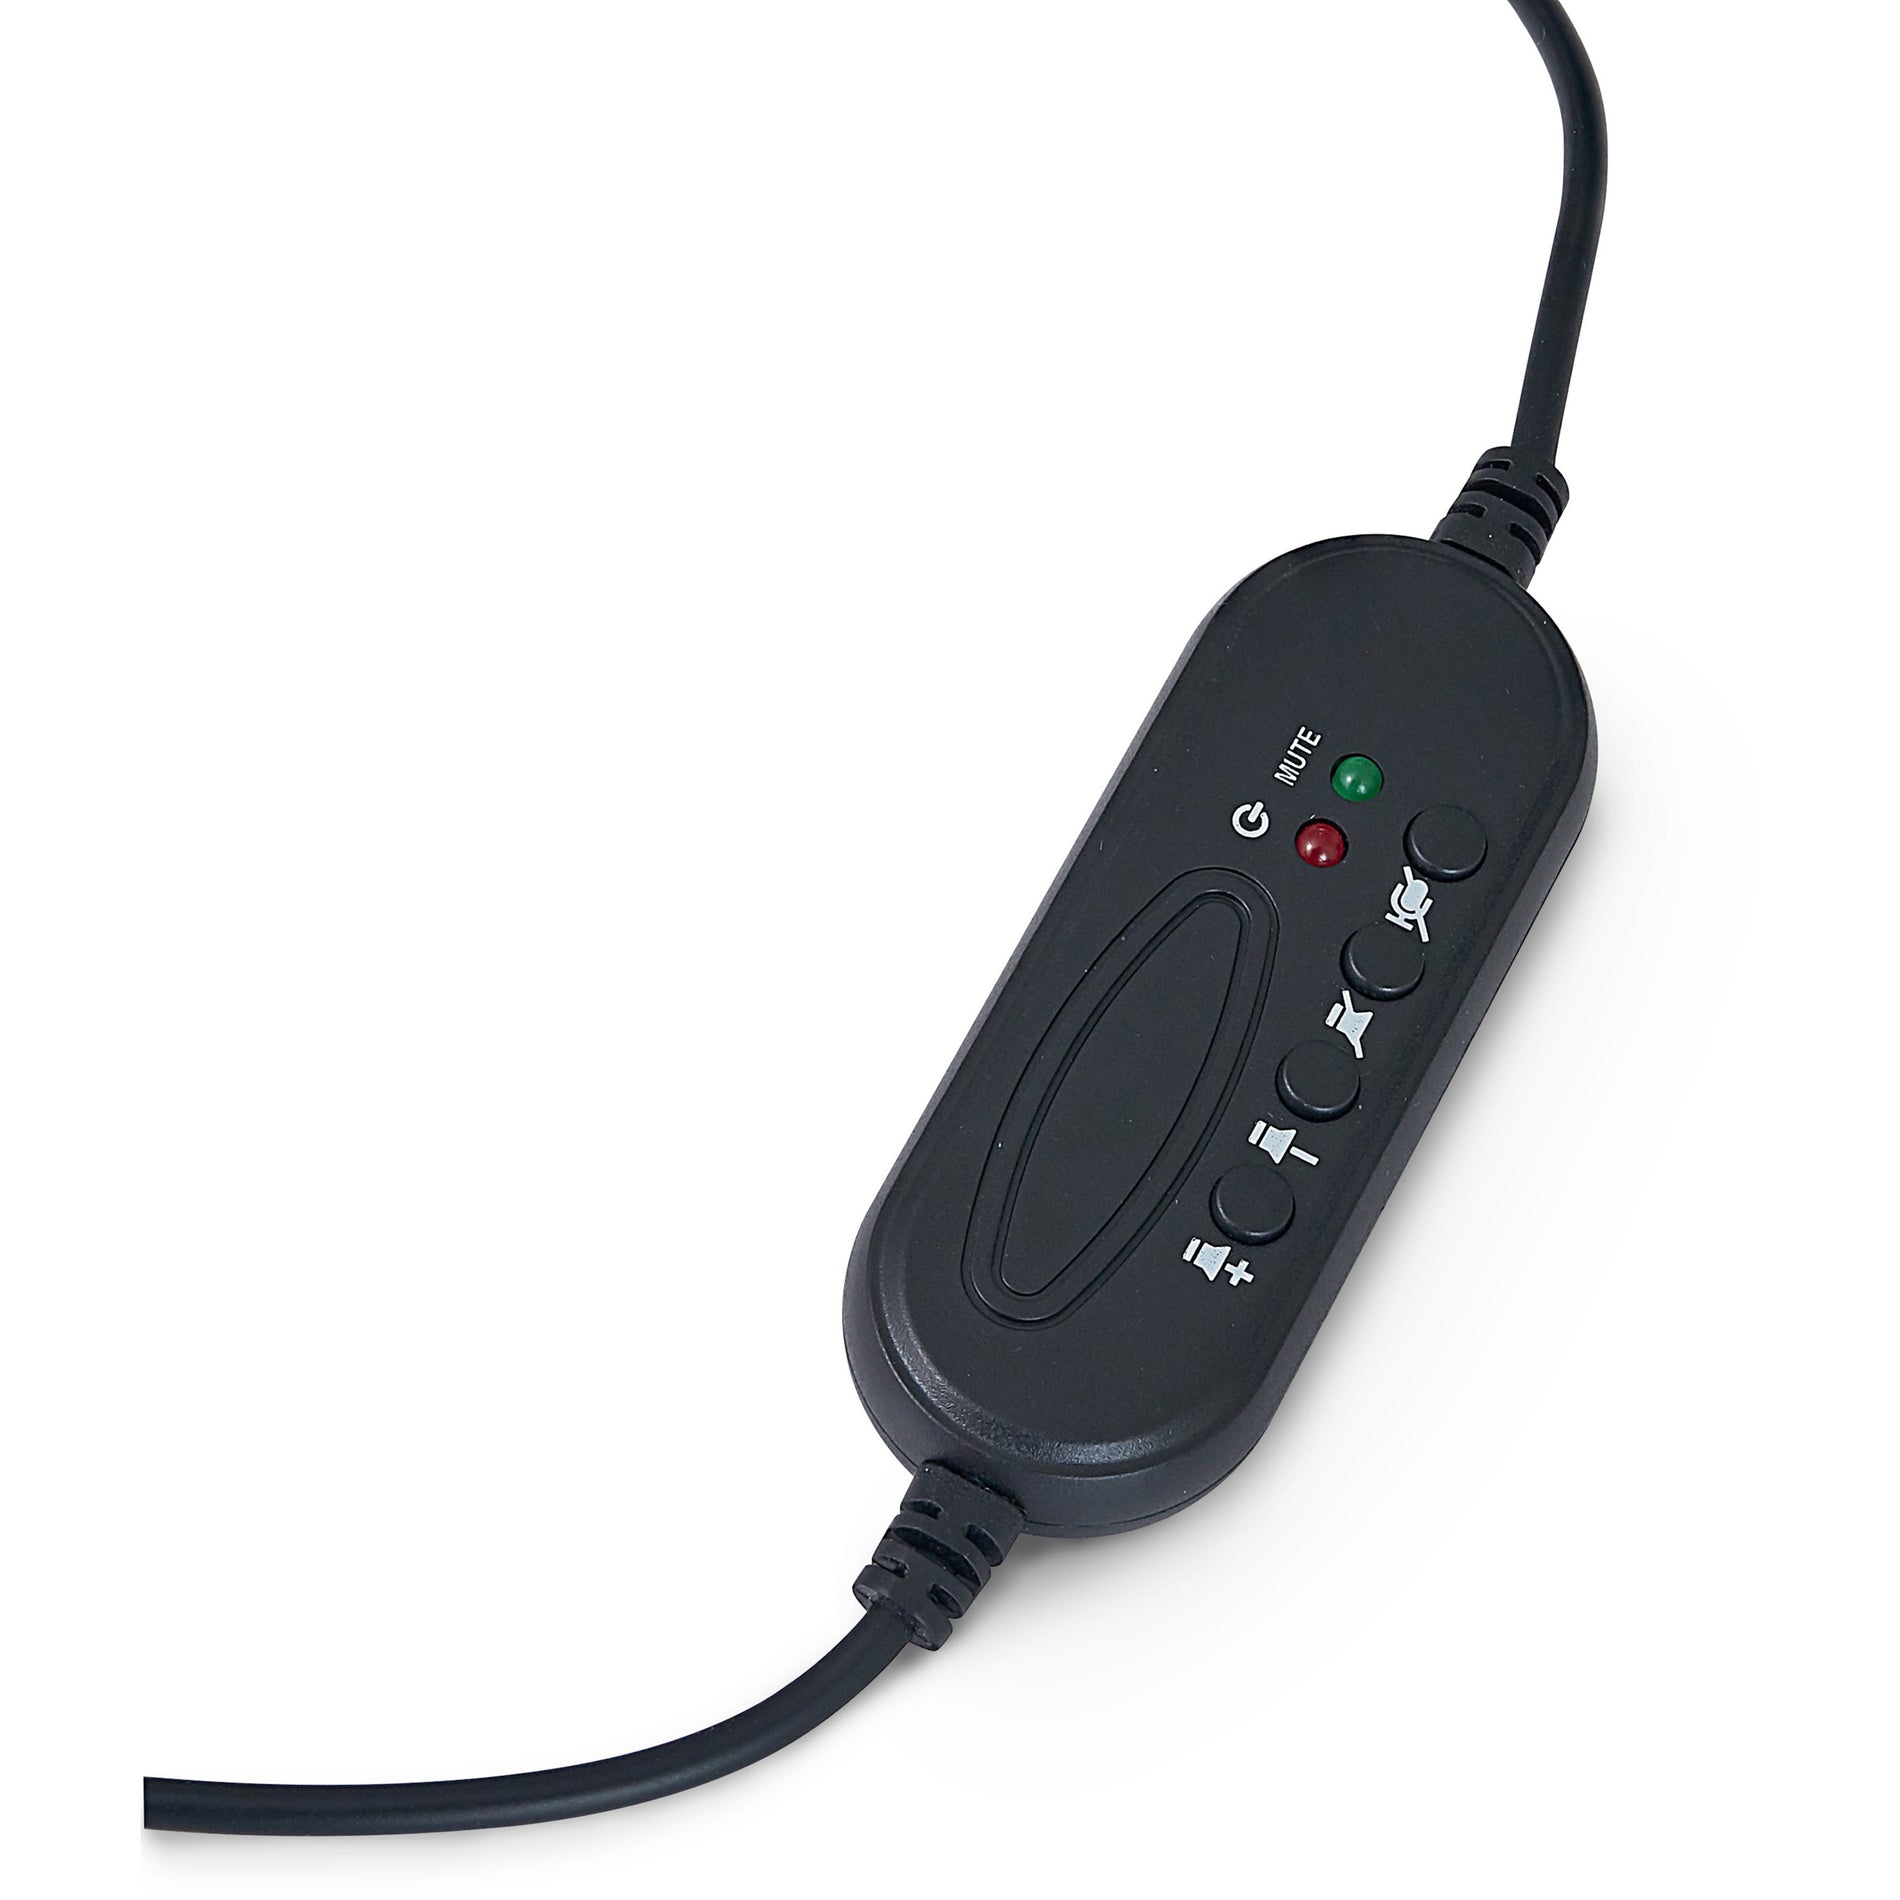 Verbatim 70723 Auriculares Estéreo con Micrófono y Control Remoto en Línea Tipo A USB Garantía de 1 Año.